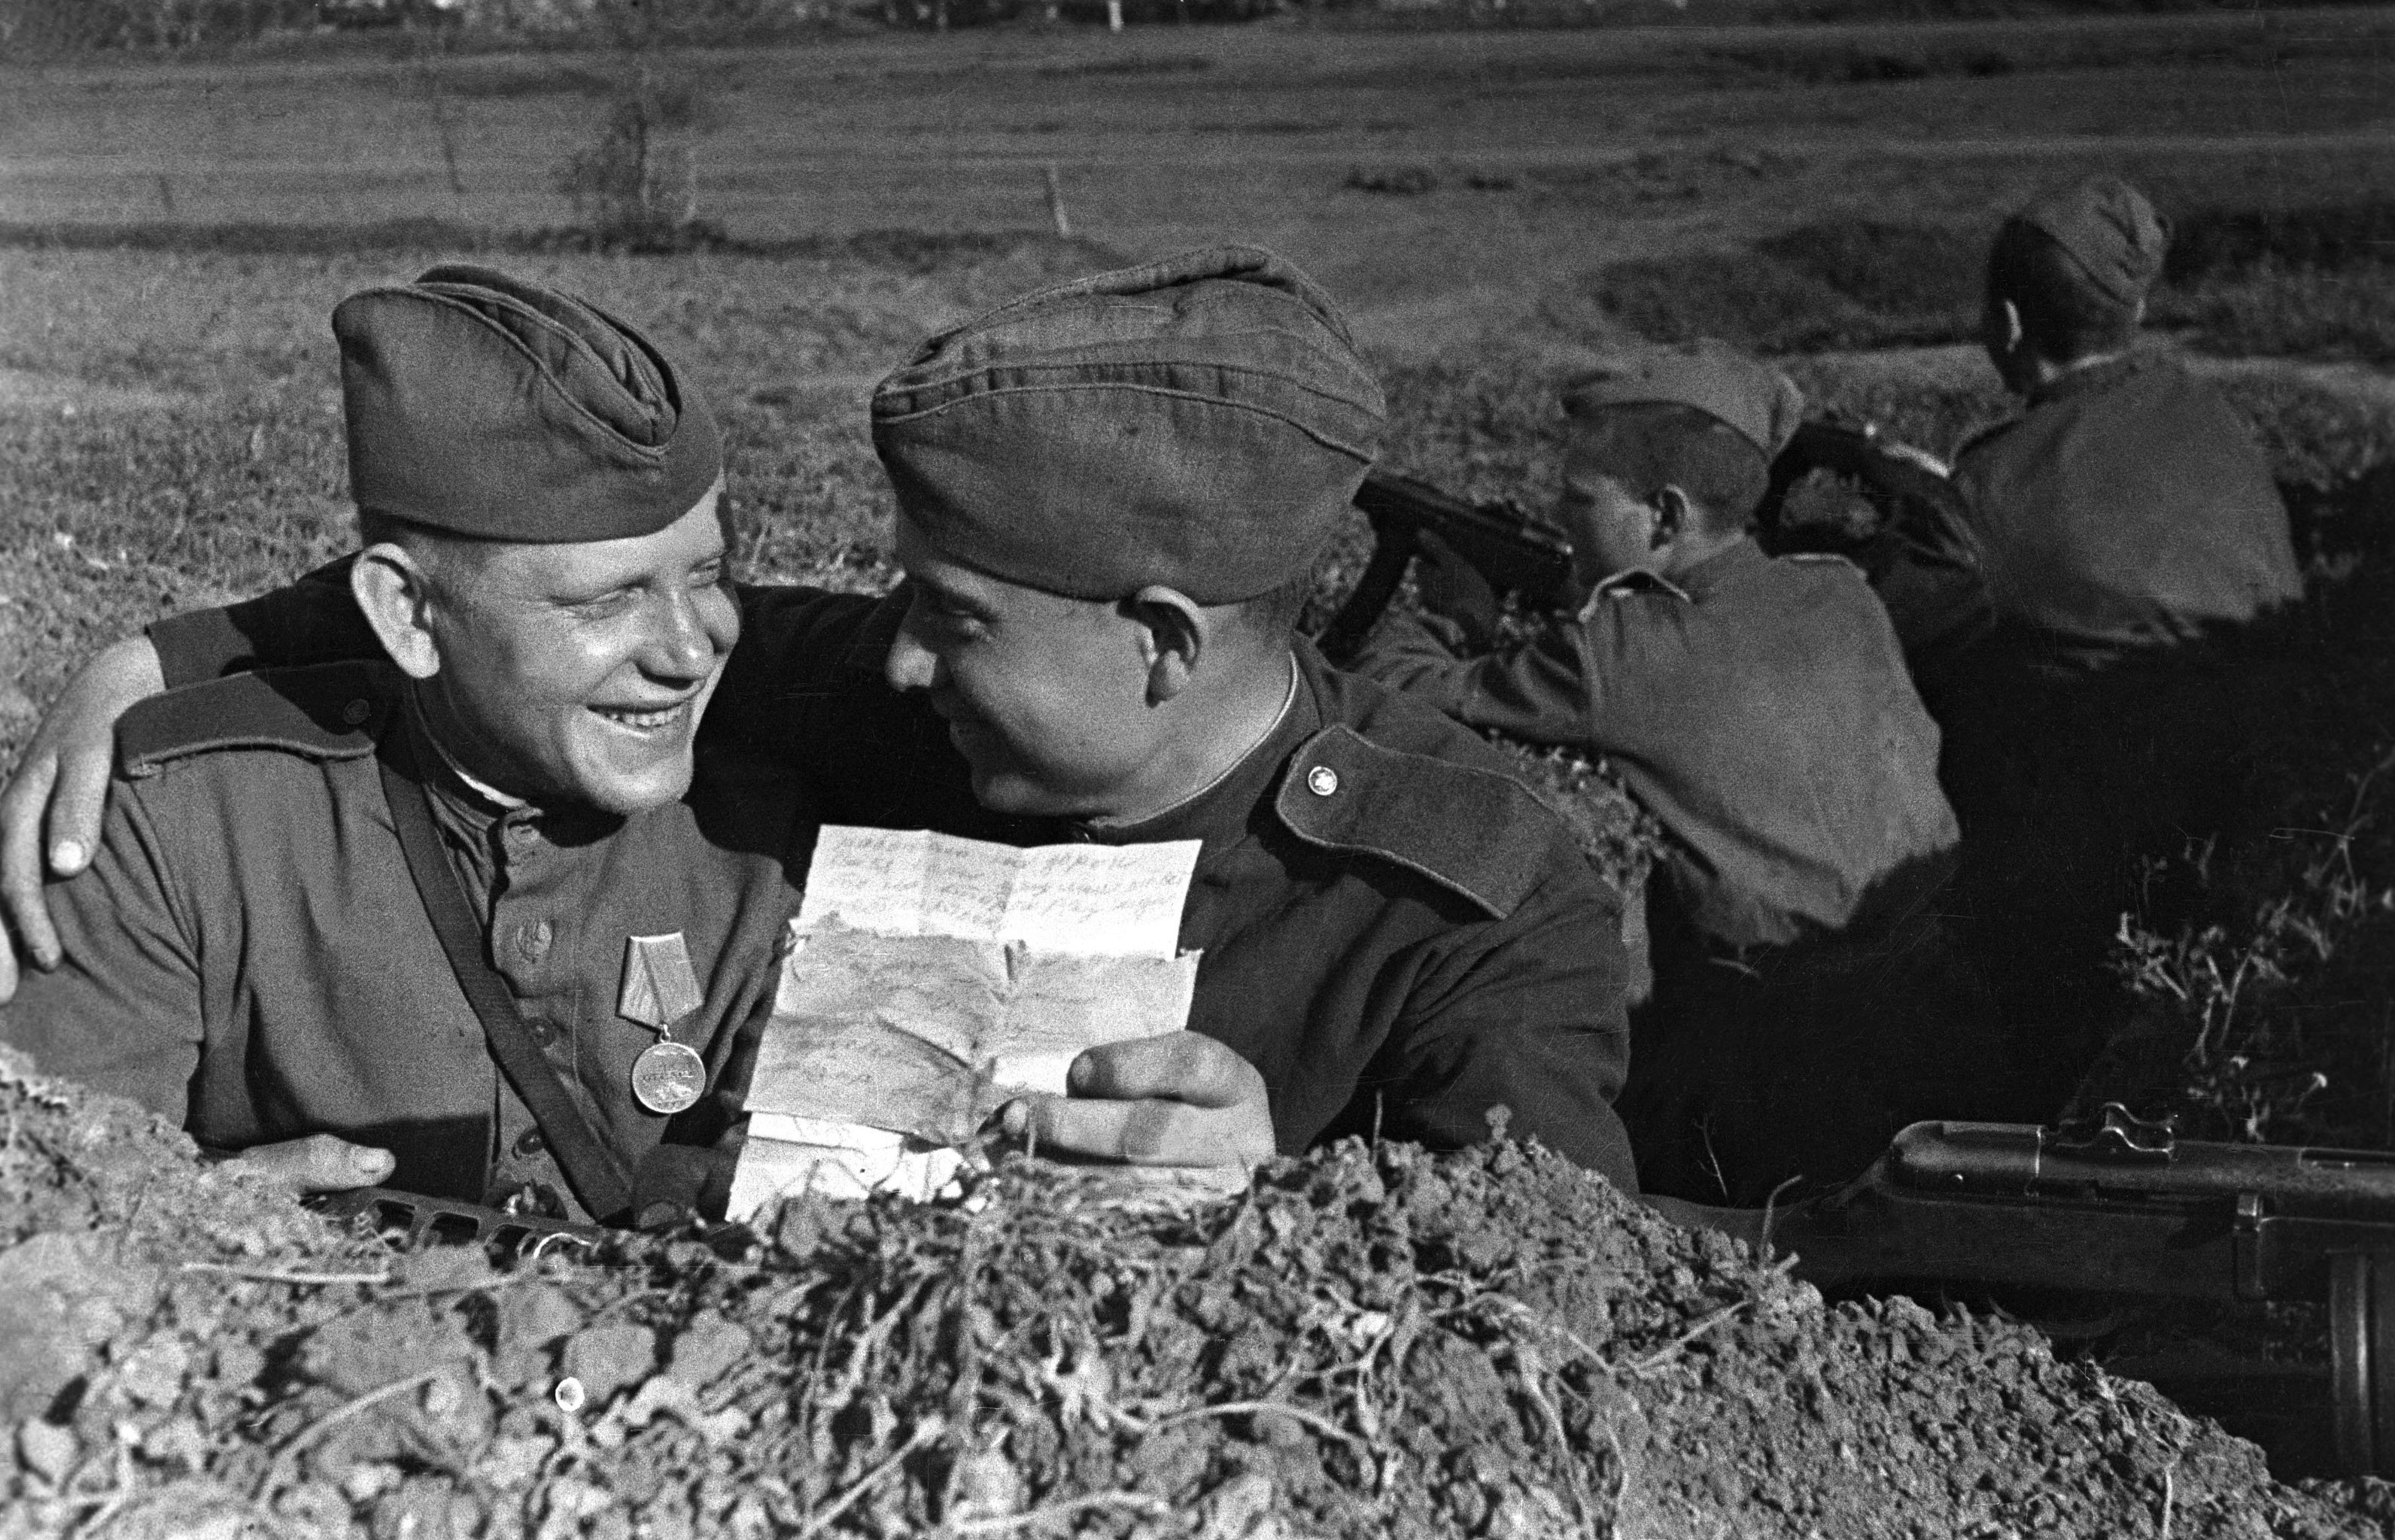 Поступи вов. ВОВ В окопах на фронте 1941-1945. 1941 Фронт солдаты.